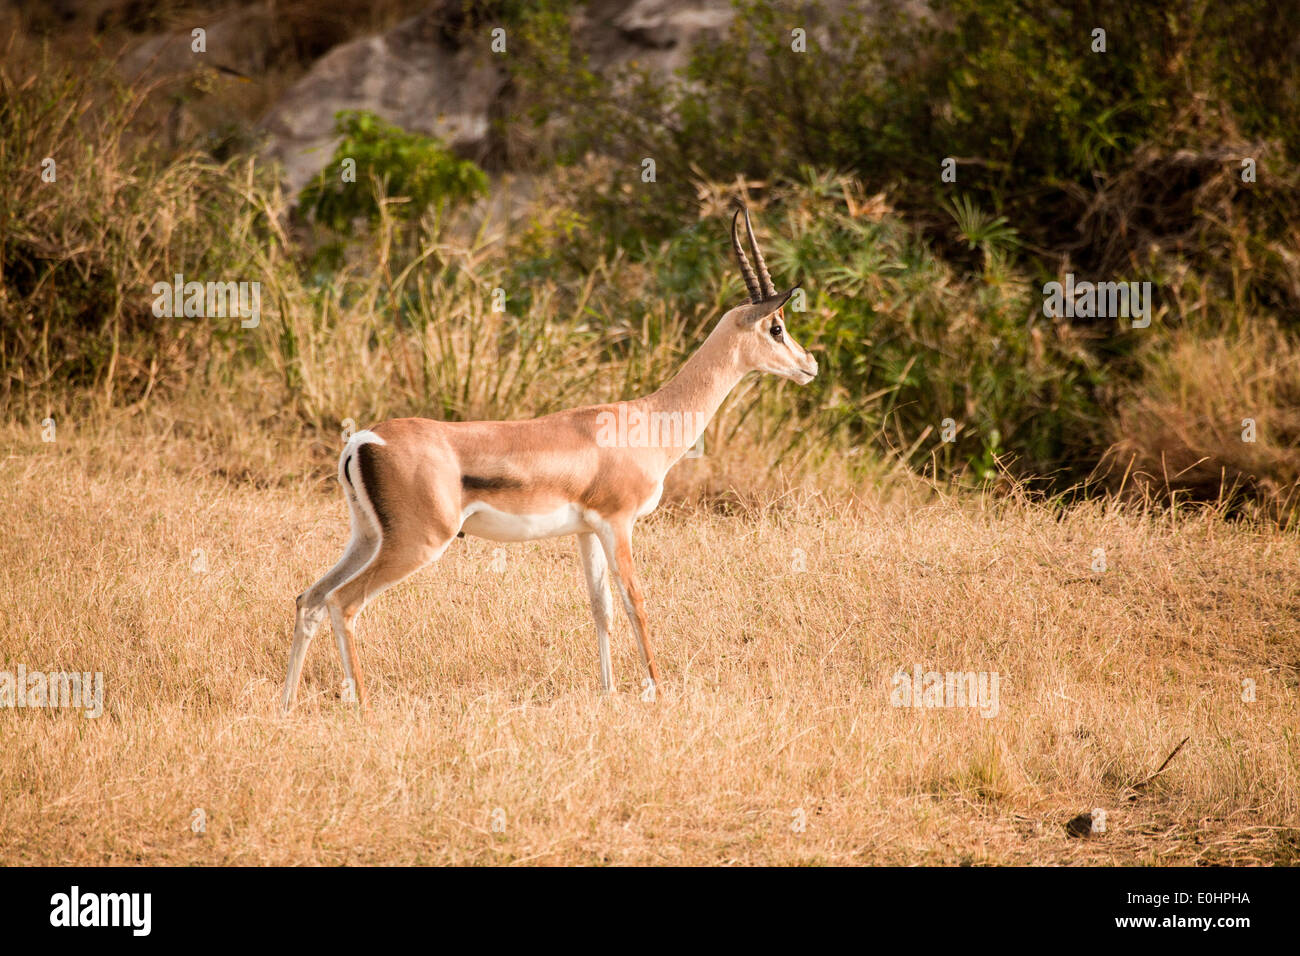 La gazelle de Grant (Nanger granti). Photographié en Tanzanie Banque D'Images